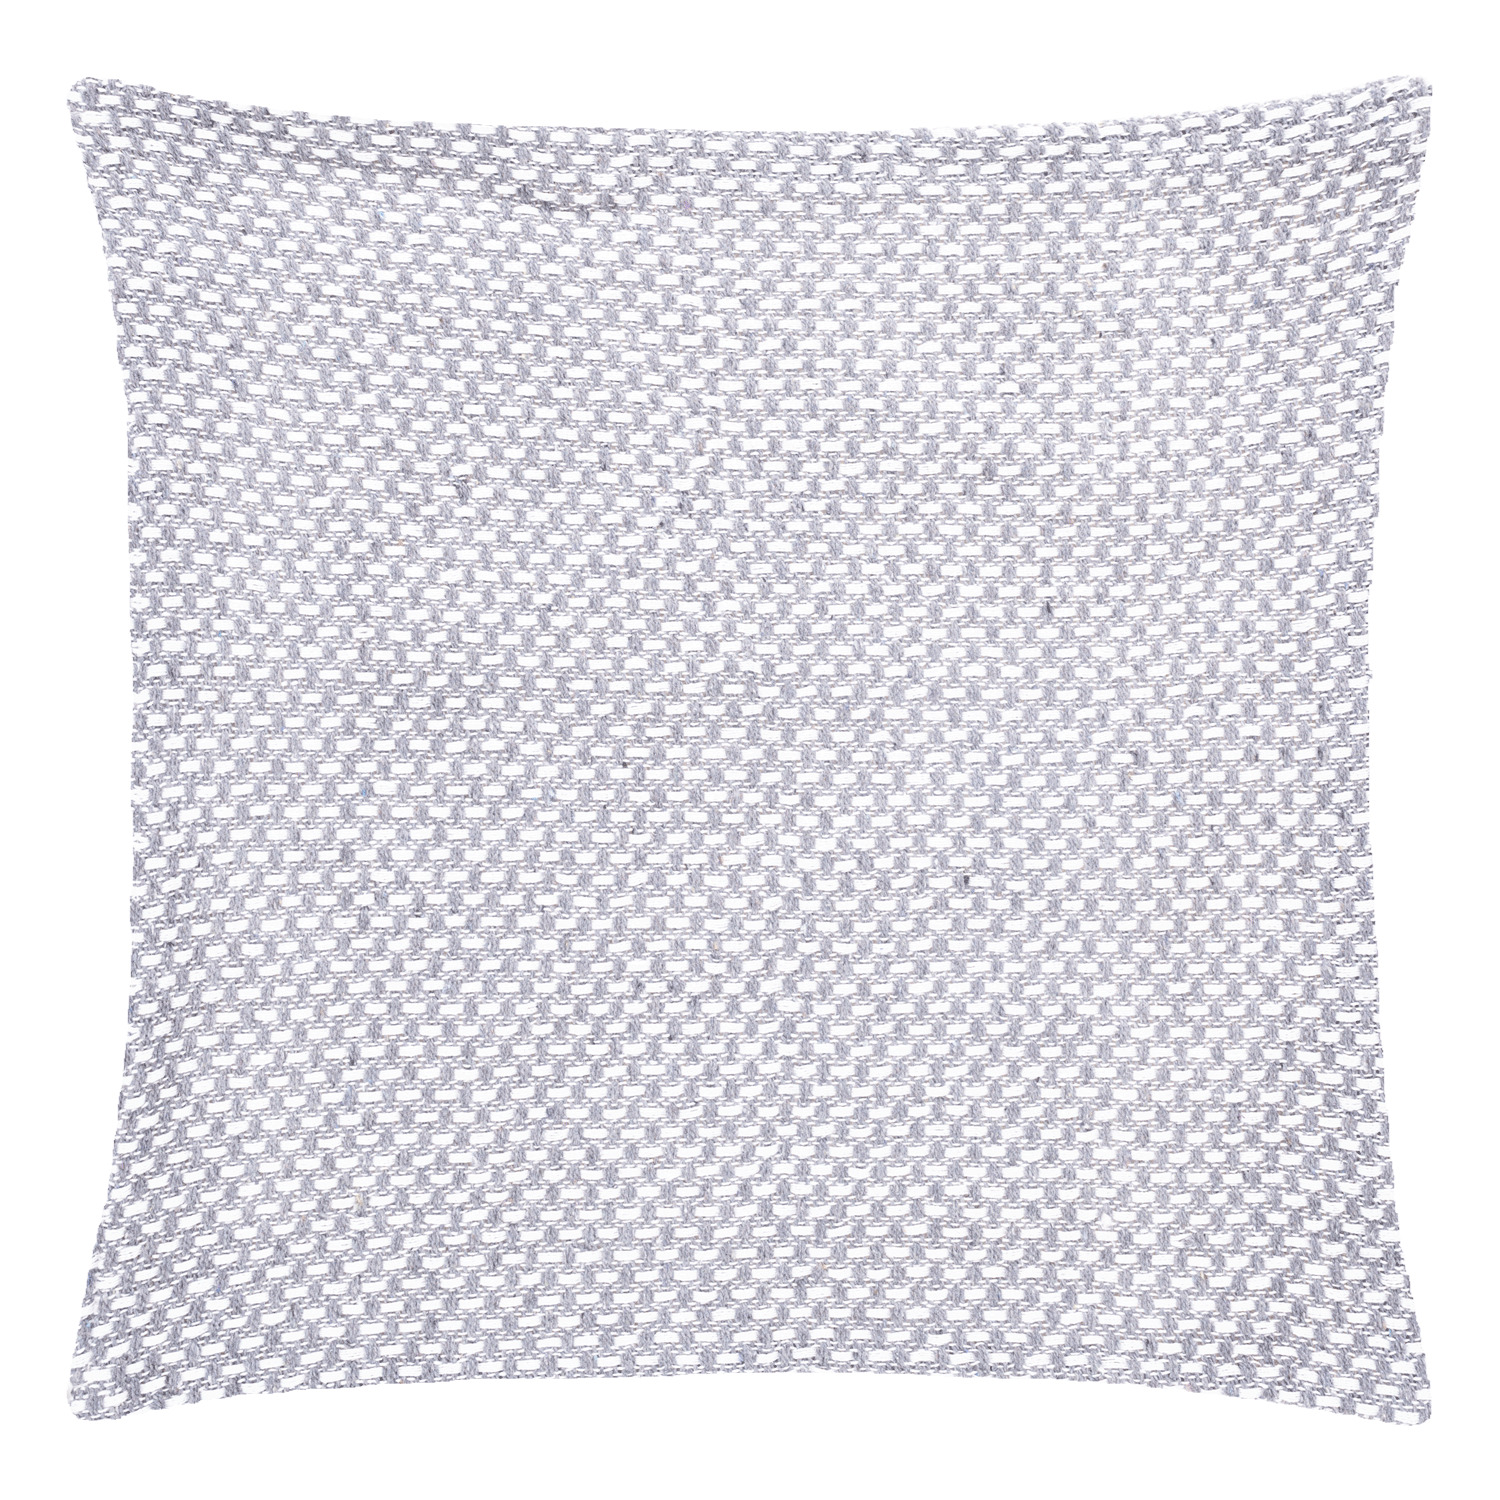 Woven decorative cushion  17.5"x17.5"